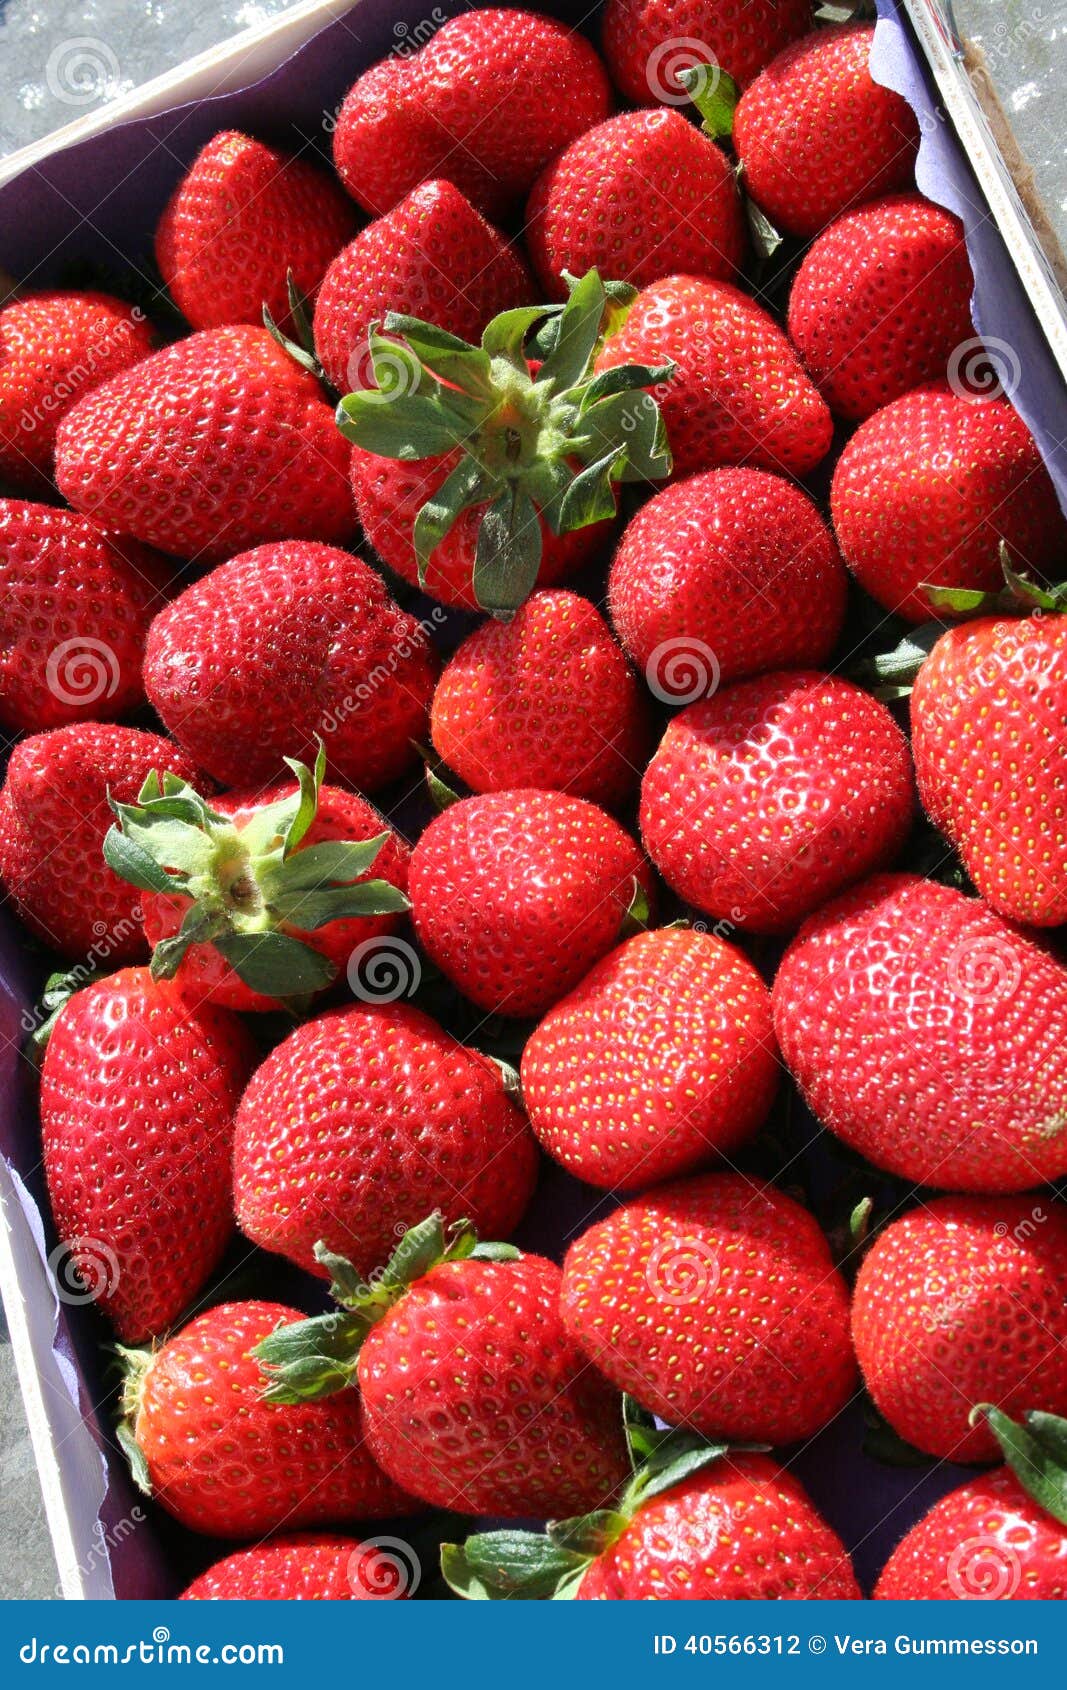 Strawberries stock photo. Image of dessert, strawberries - 40566312